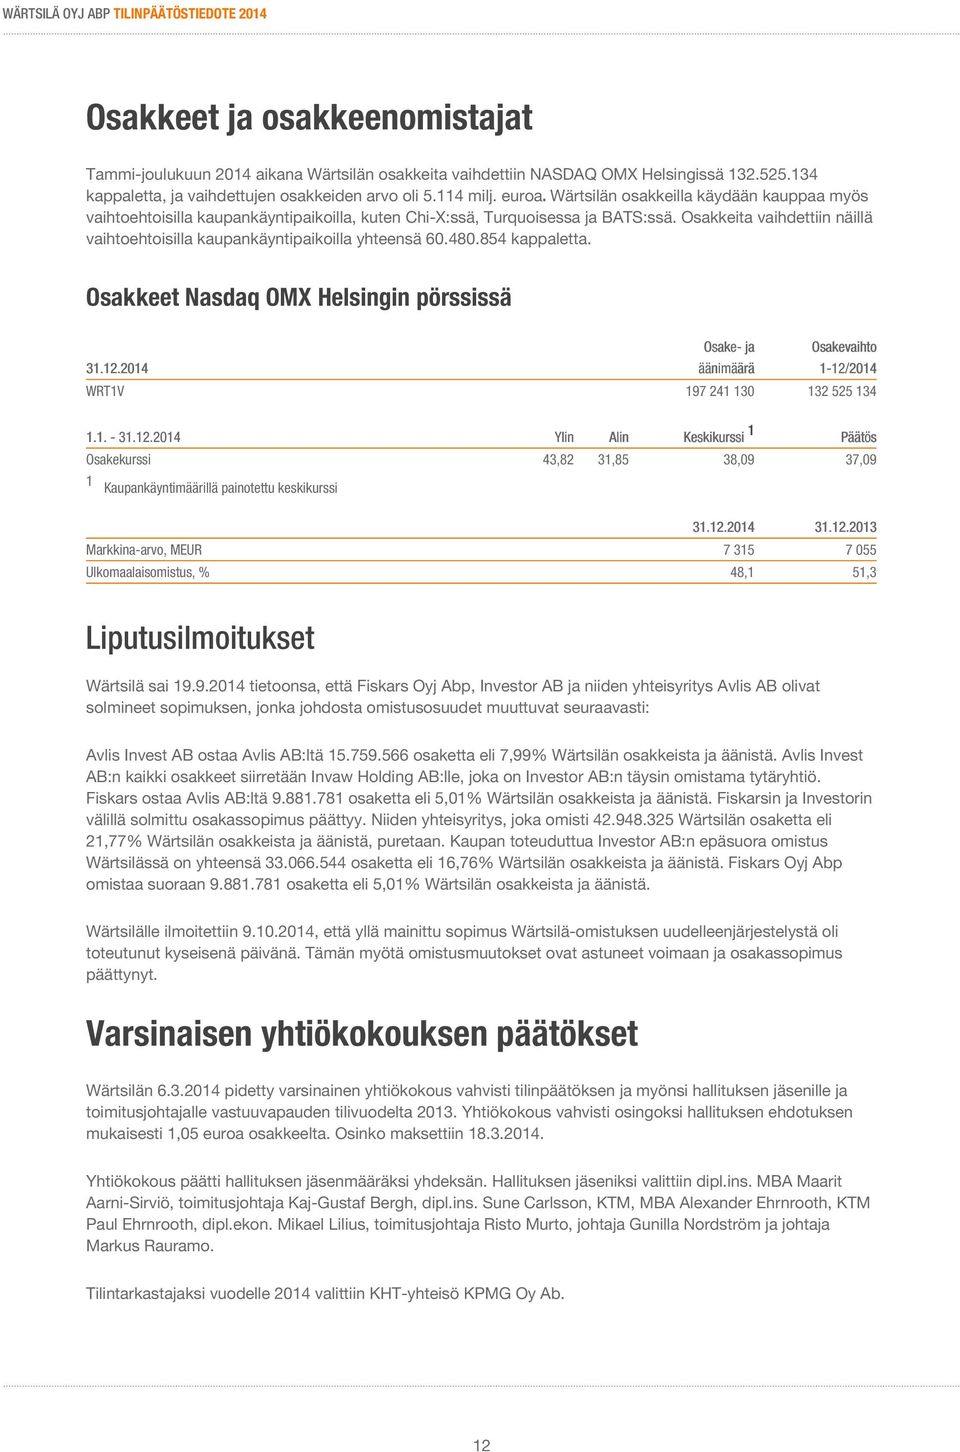 Osakkeita vaihdettiin näillä vaihtoehtoisilla kaupankäyntipaikoilla yhteensä 60.480.854 kappaletta. Osakkeet Nasdaq OMX Helsingin pörssissä Osake- ja Osakevaihto 31.12.